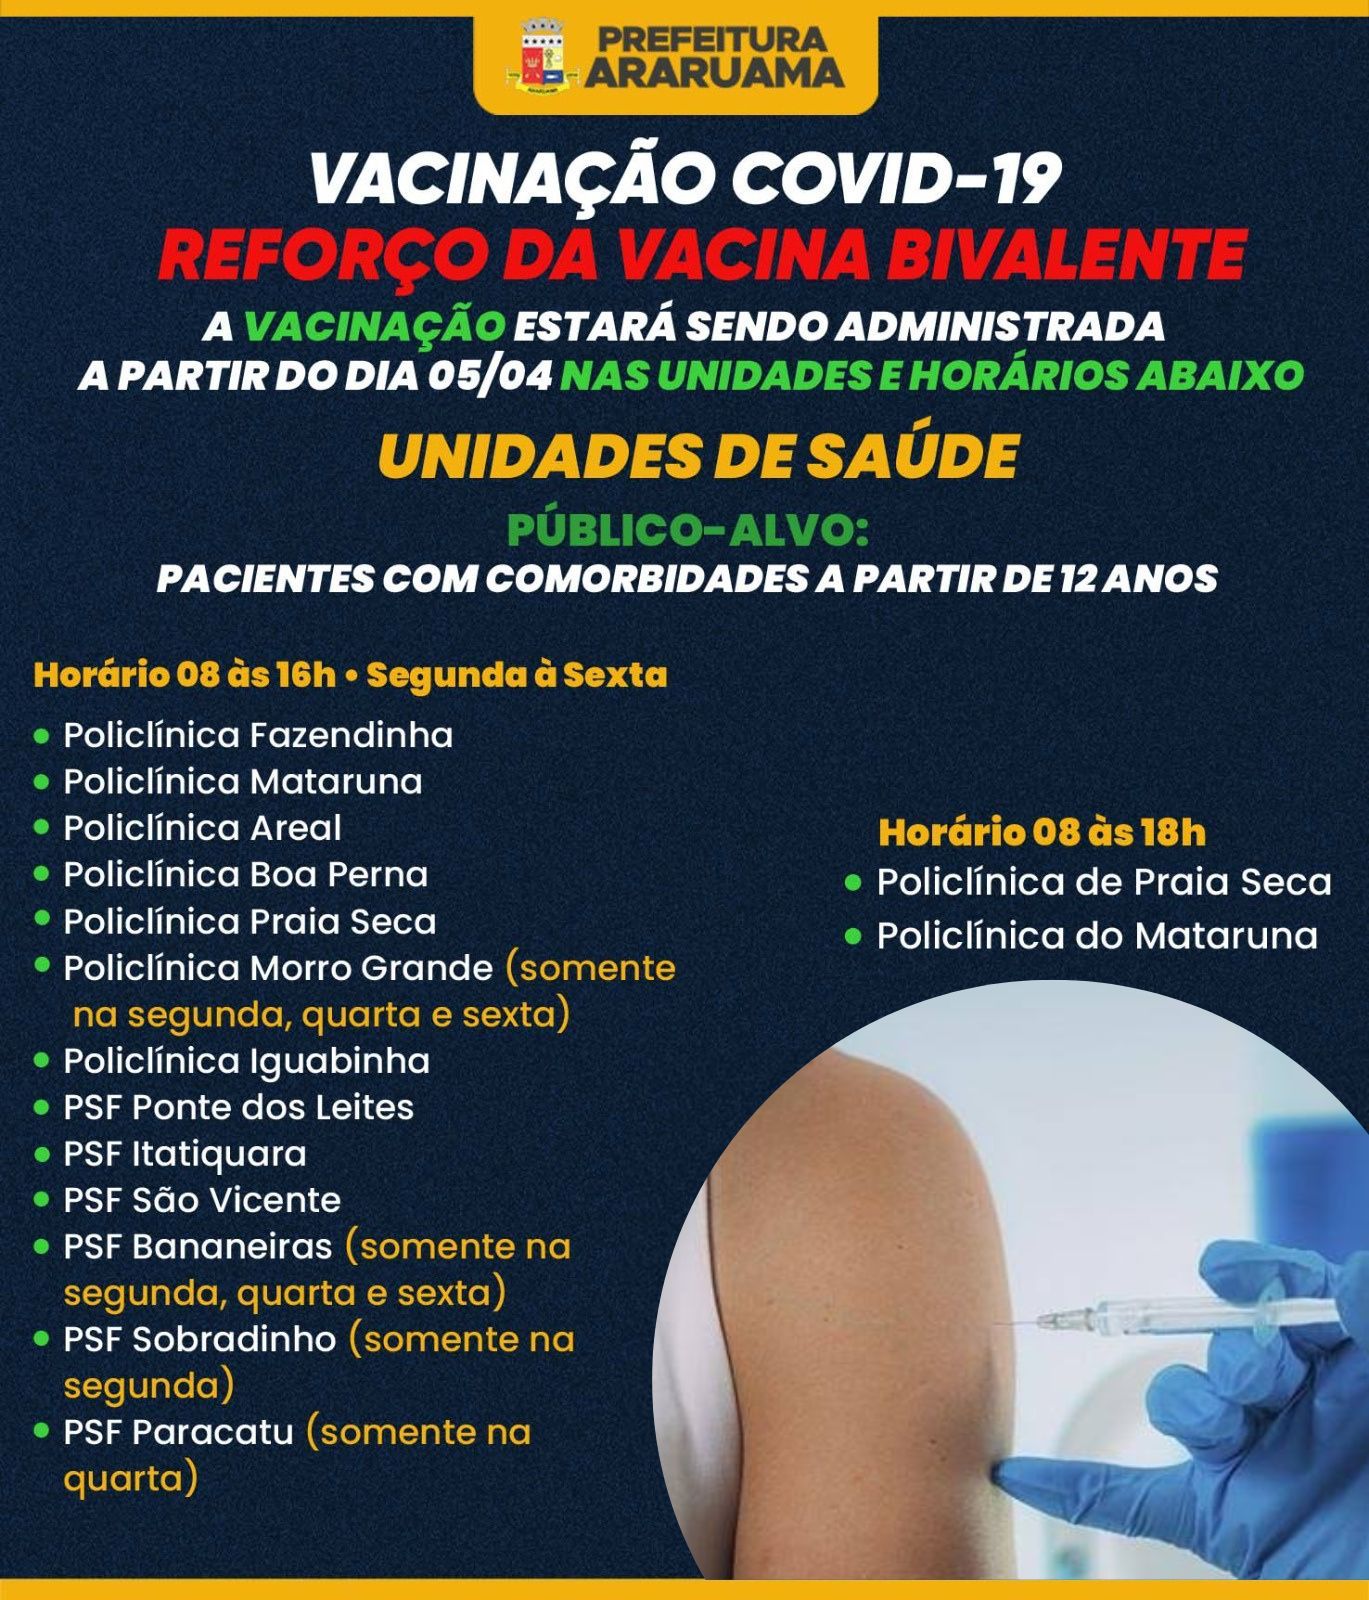 Prefeitura de Araruama vai vacinar pacientes com comorbidades a partir de 12 anos com a vacina bivalente contra a COVID-19 a partir dessa quarta-feira